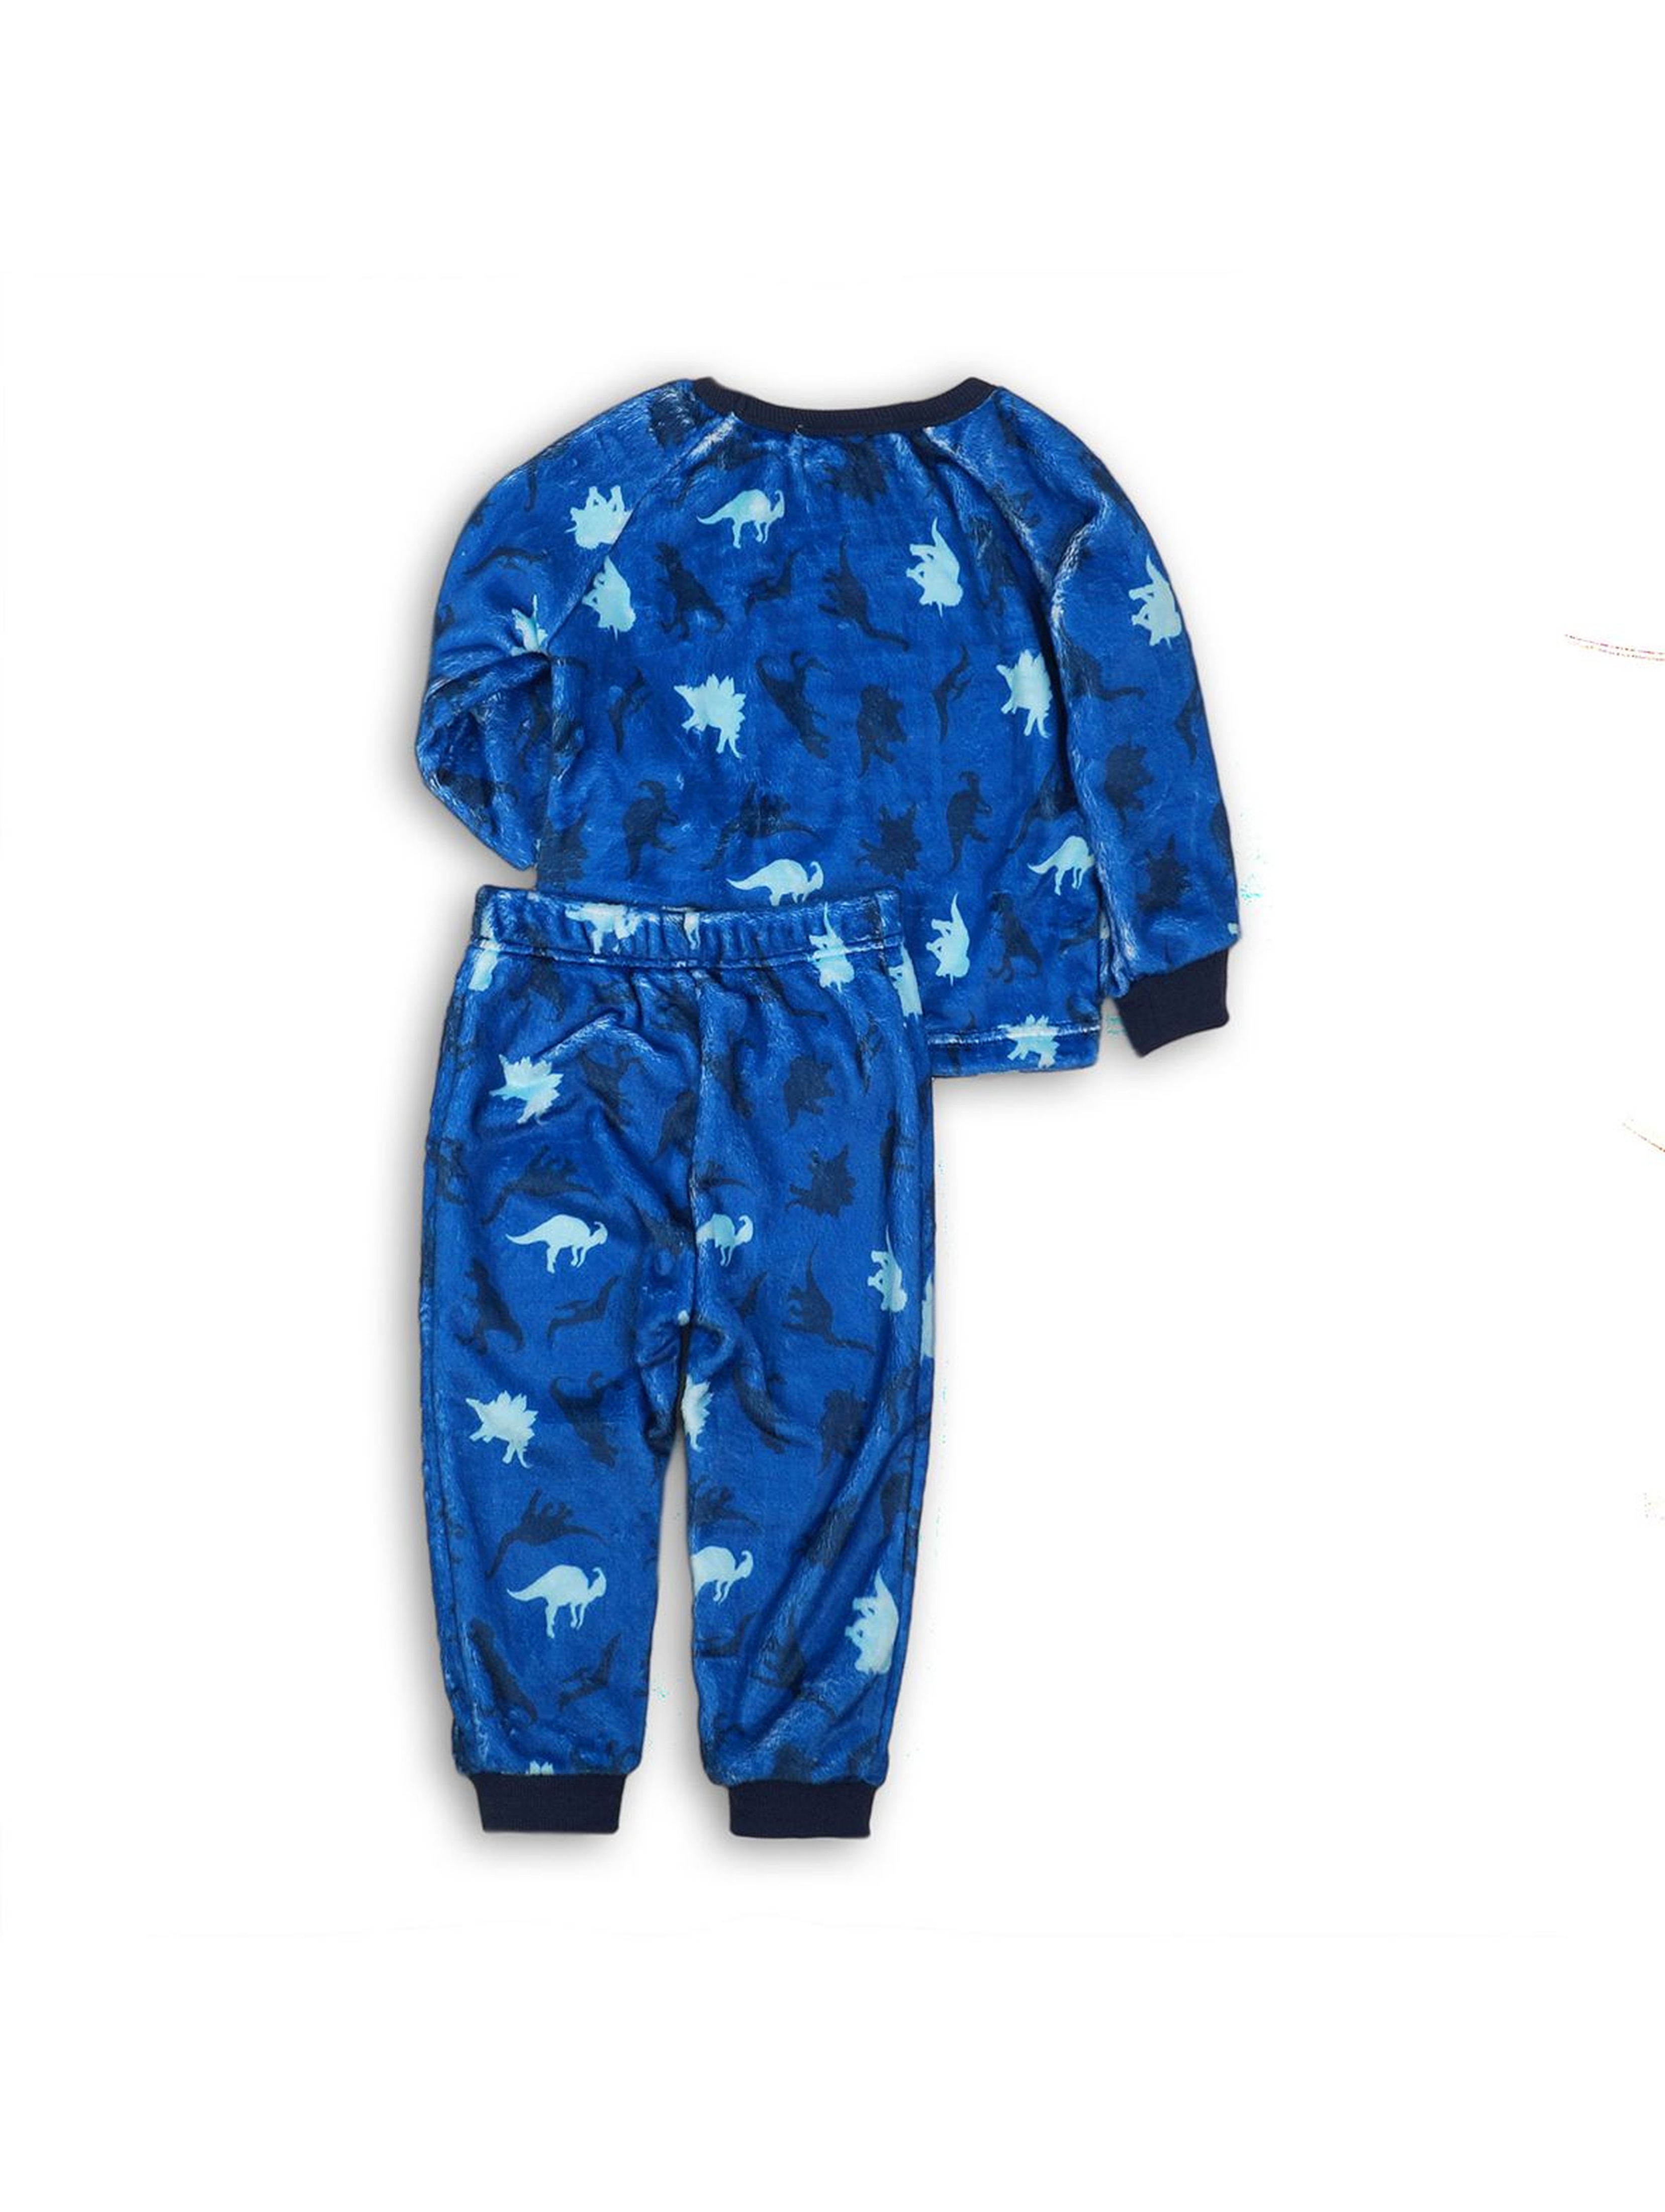 Ciepła piżama chłopięca w dinozaury - niebieska